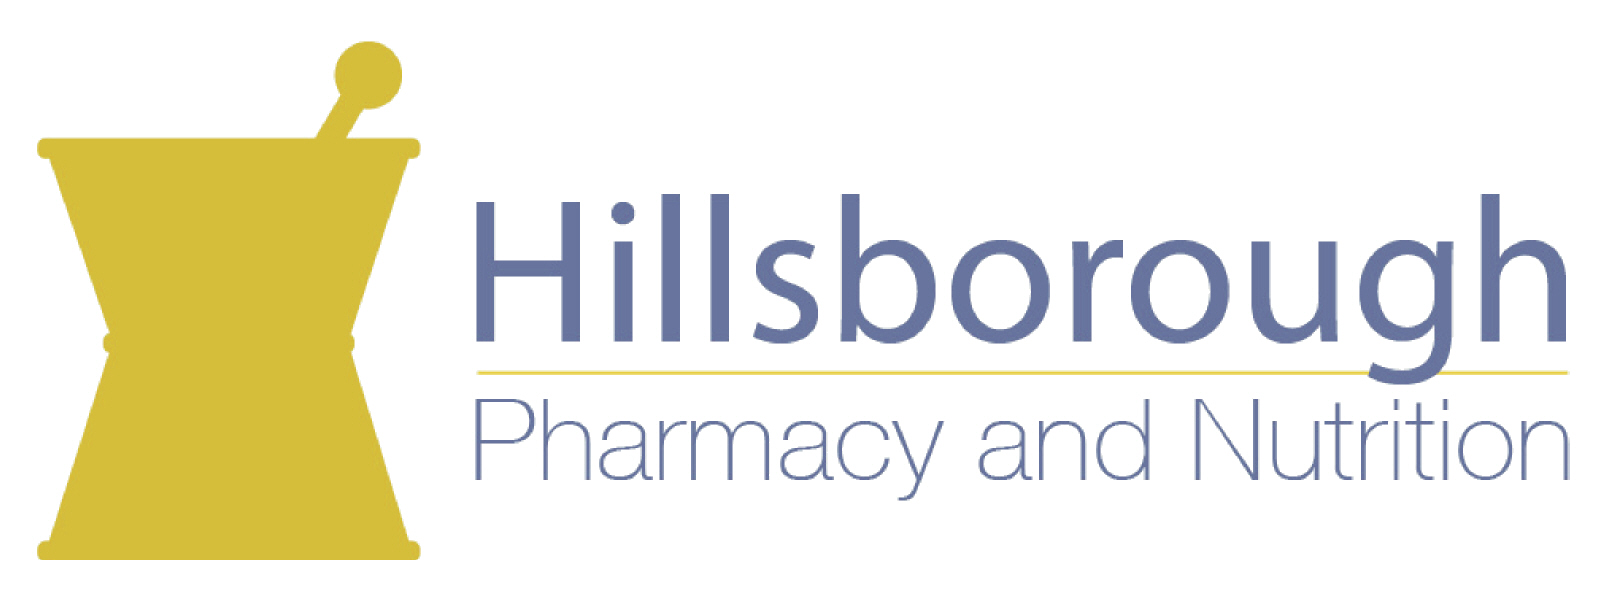 Hillsborough Pharmacy and Nutrition